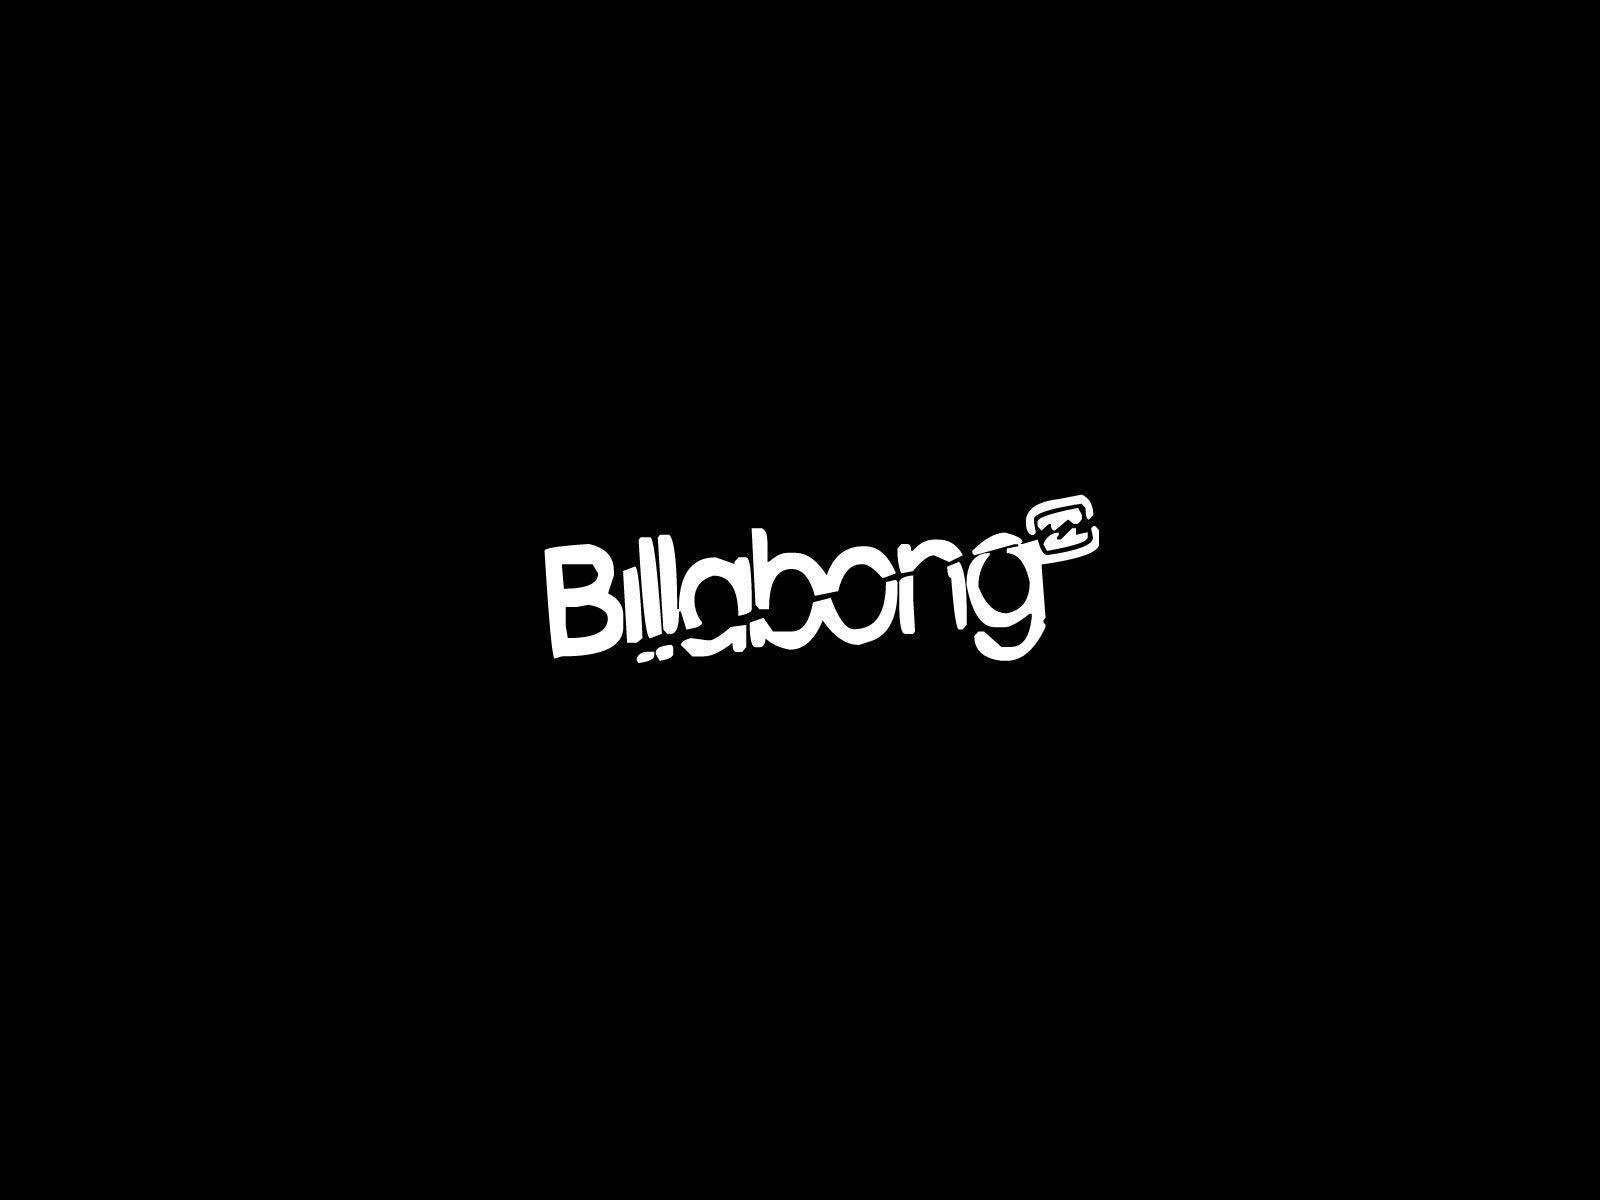 Billabong Logo Wallpapers - Top Free Billabong Logo Backgrounds ...